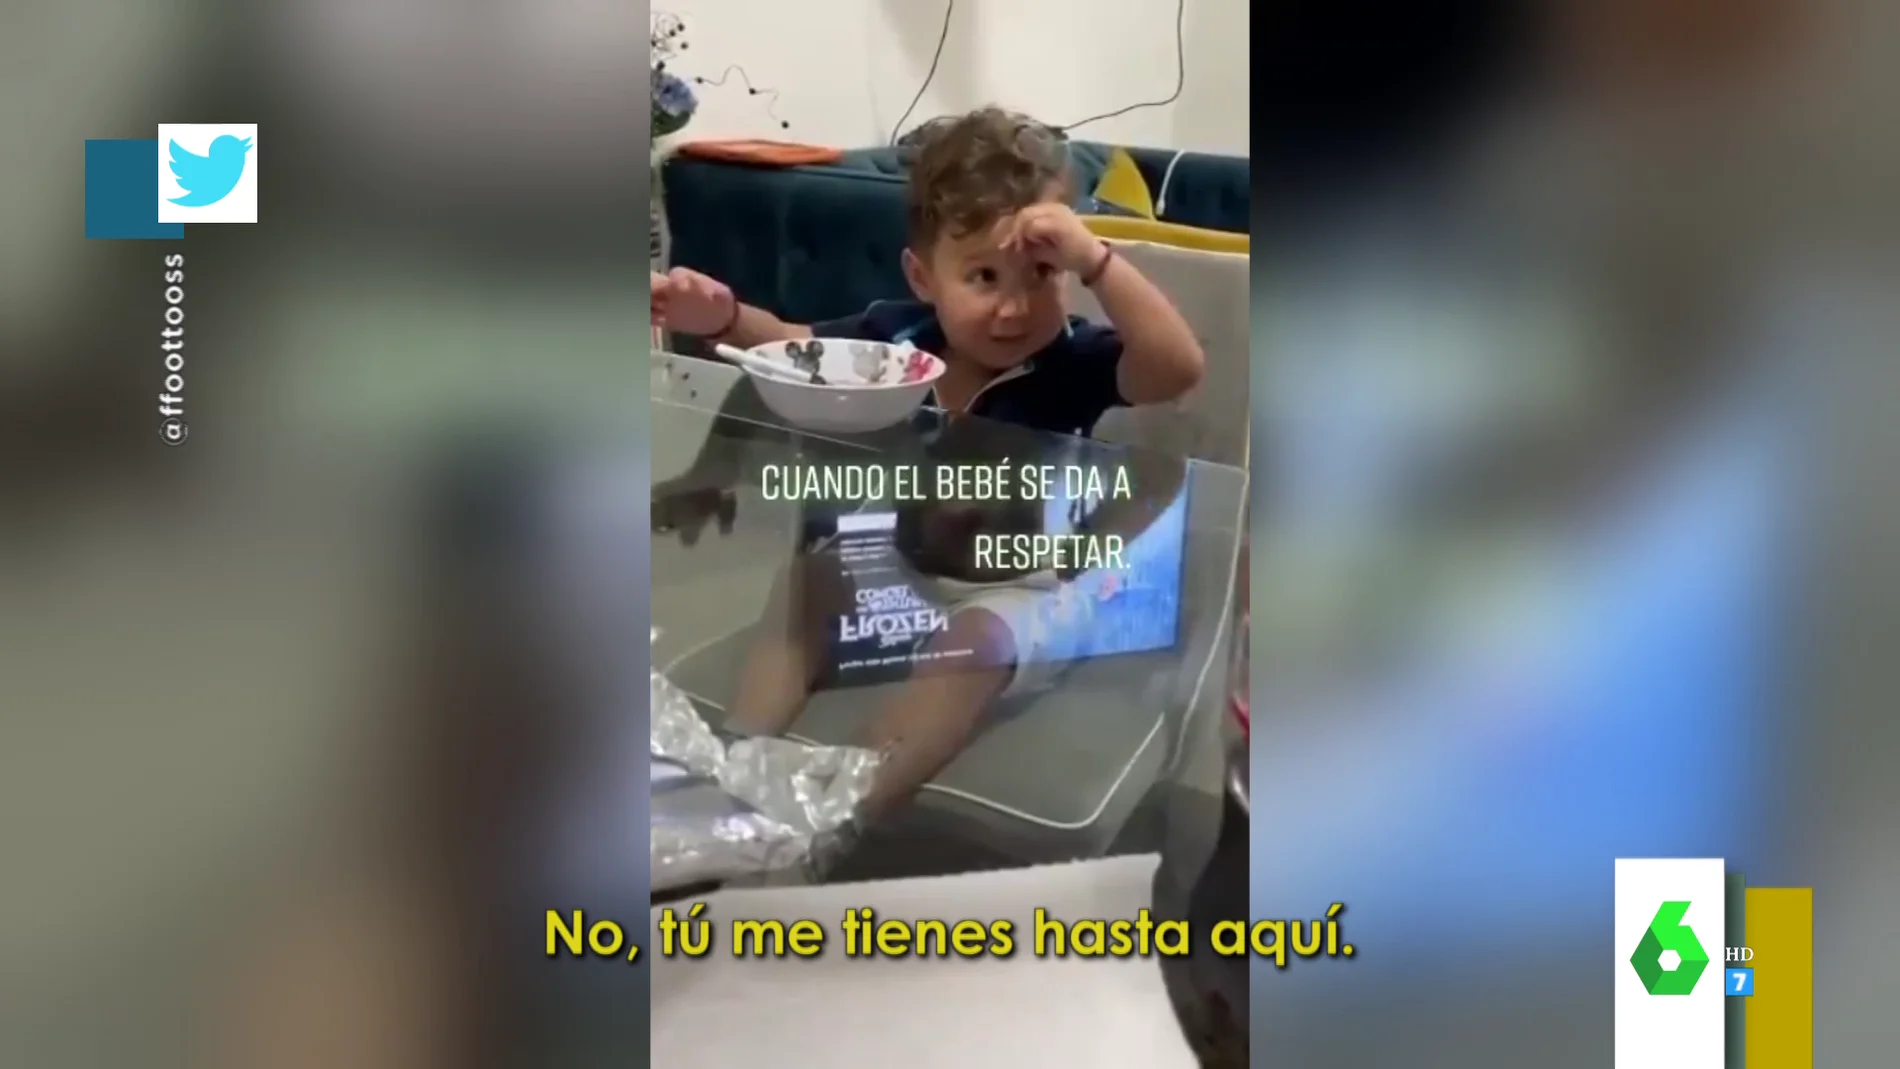 "Me tienes estresado": la respuesta viral de un bebé que trata de hacerse respetar ante su padre